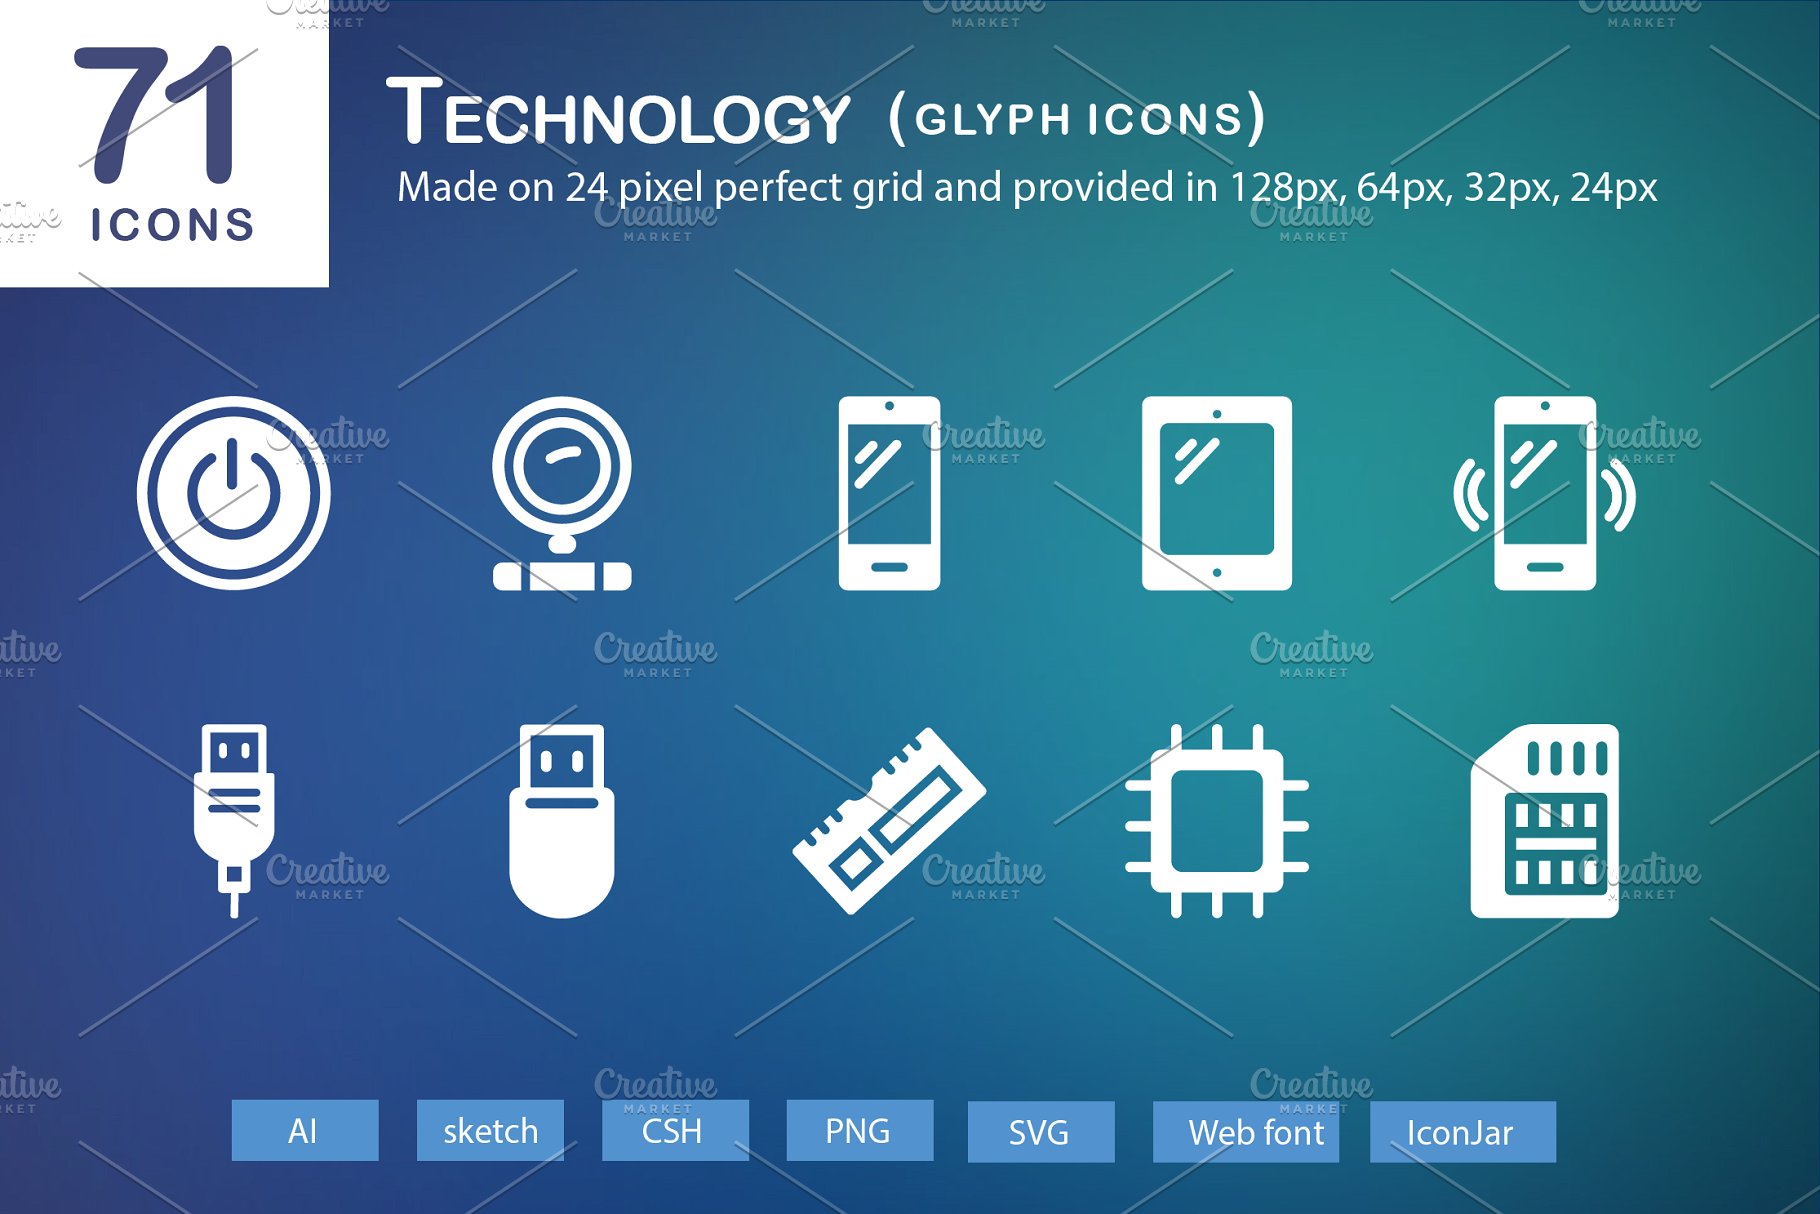 71个科技主题象形写意文字图标 71 Technology Glyph Icons插图